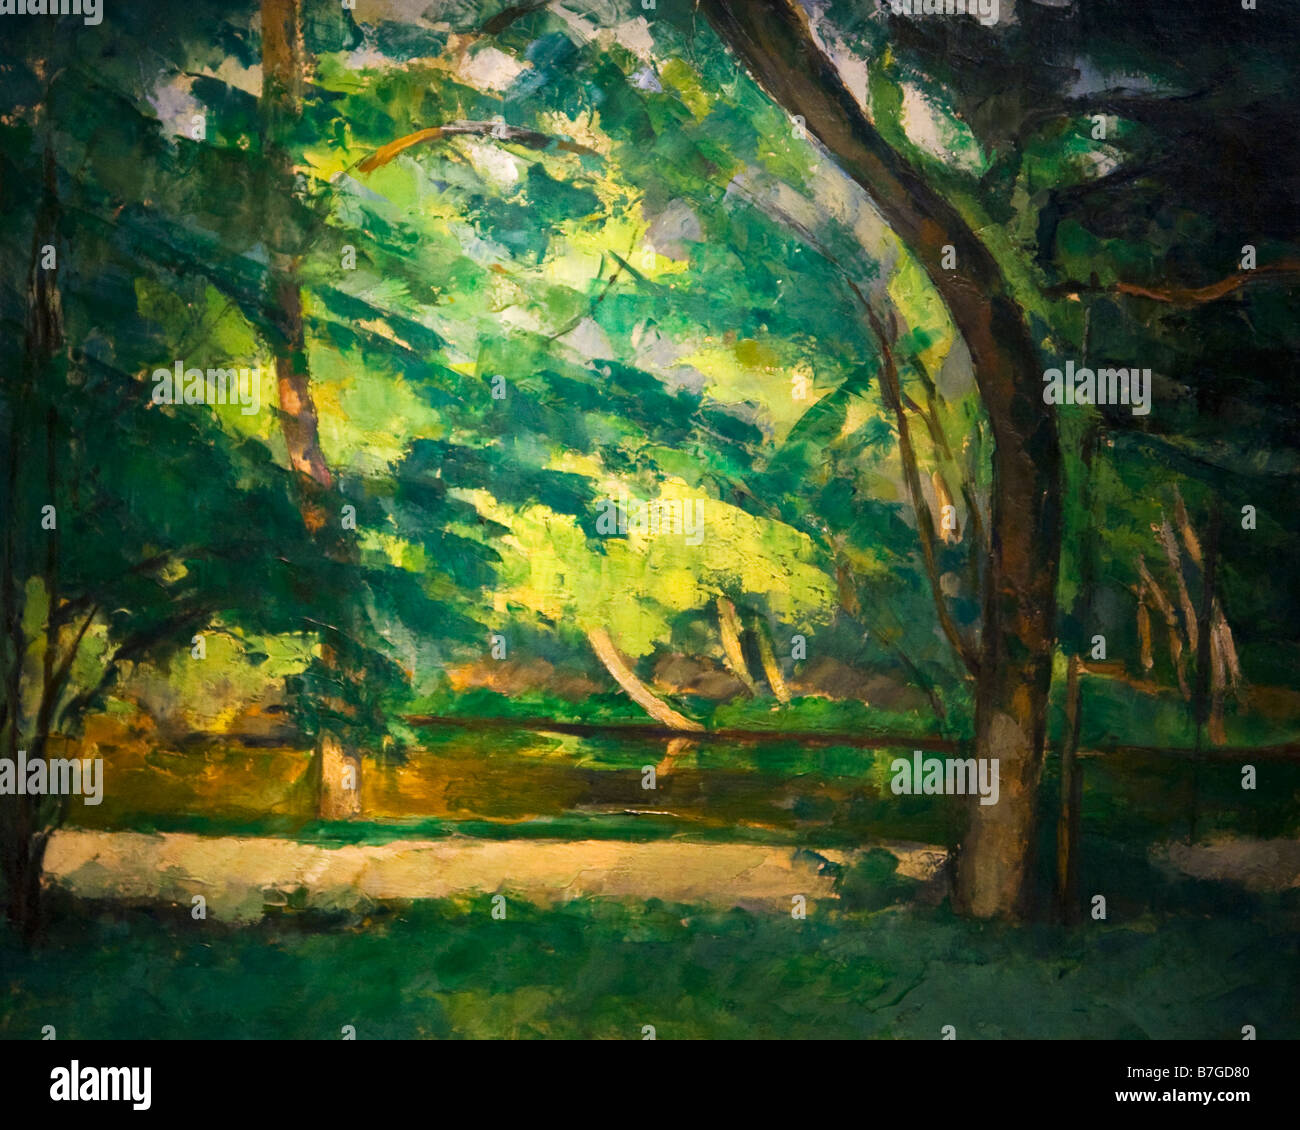 'Etang des Soeurs Osny' peint par Paul Cézanne vers 1875 Courtauld Institute Galleries London England UK Royaume-Uni GB Gre Banque D'Images